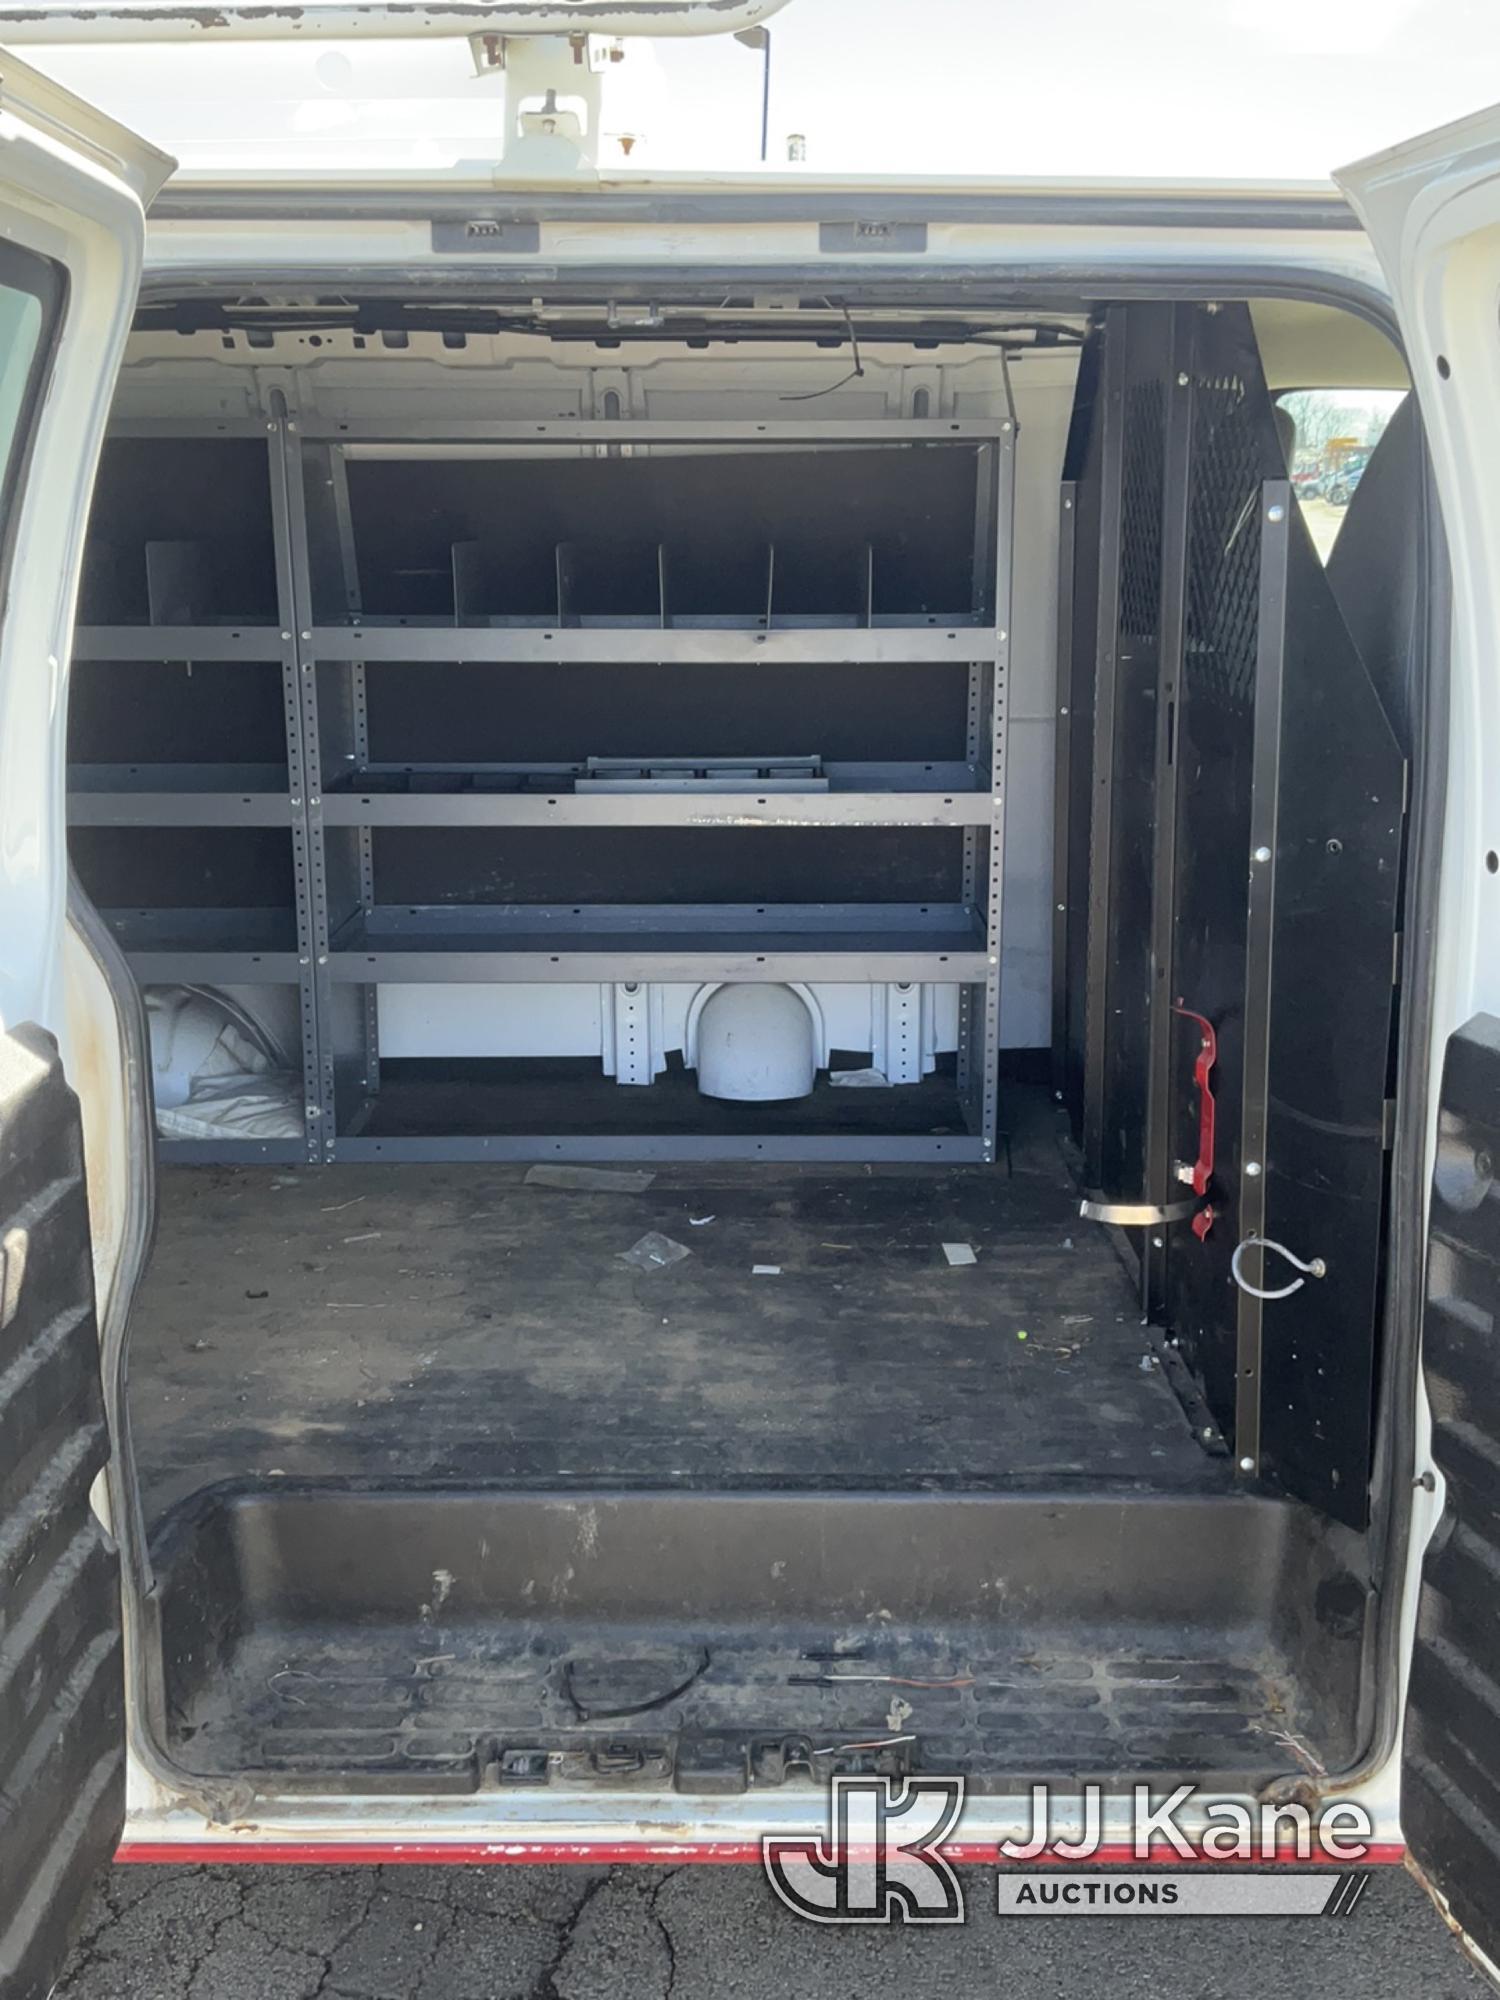 (South Beloit, IL) 2011 Chevrolet Express G2500 Cargo Van Runs & Moves) (Jump to Start-Needs Battery